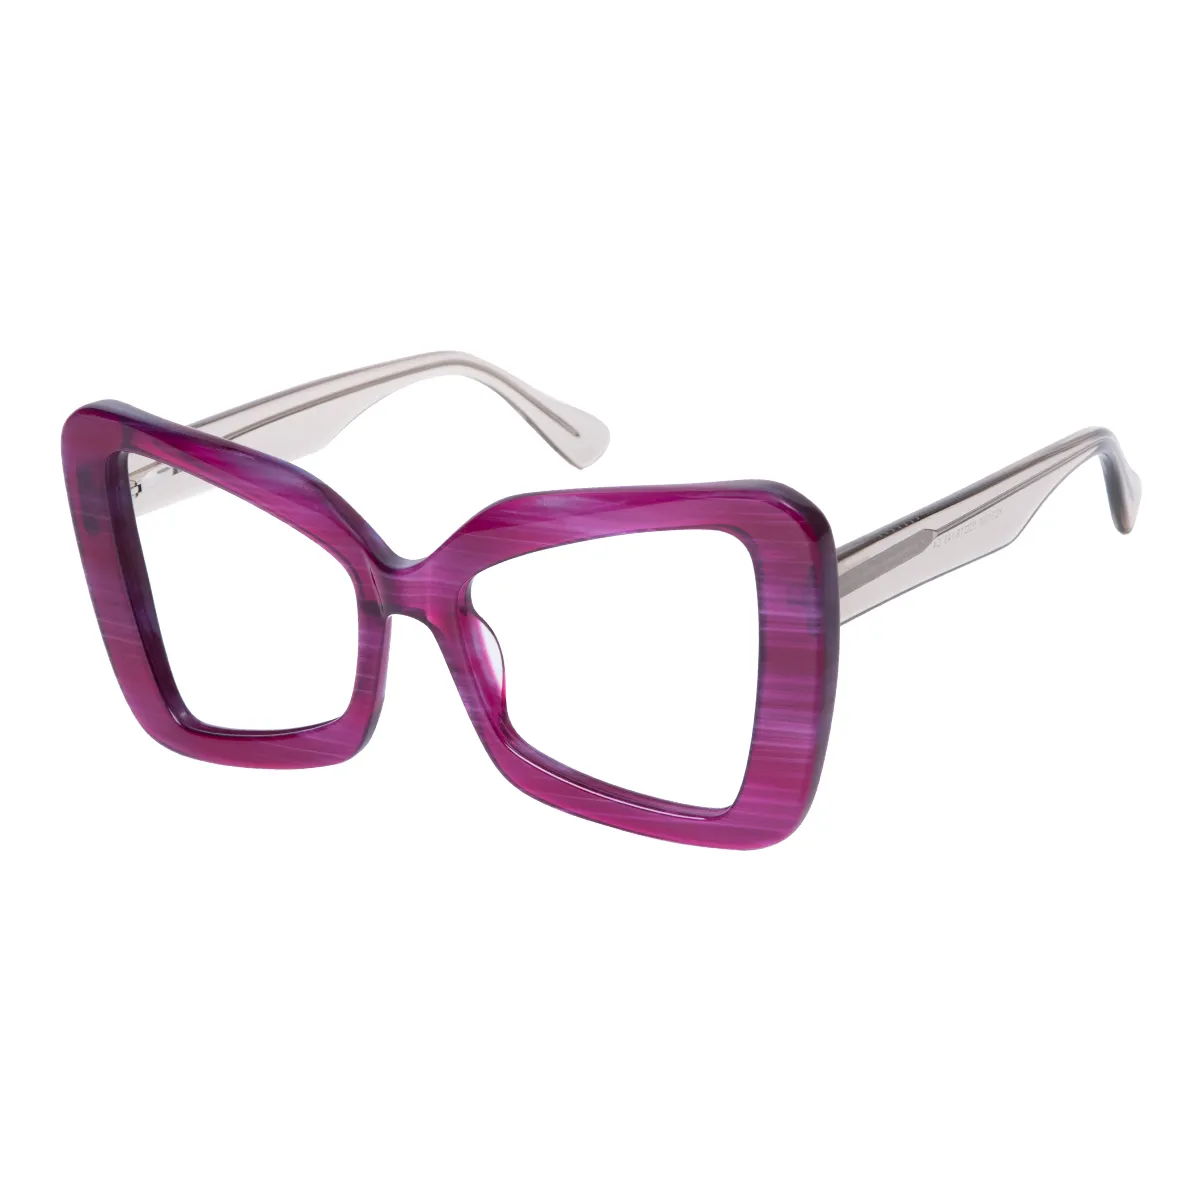 Matana - Cat-eye Purple-Gray Glasses for Women